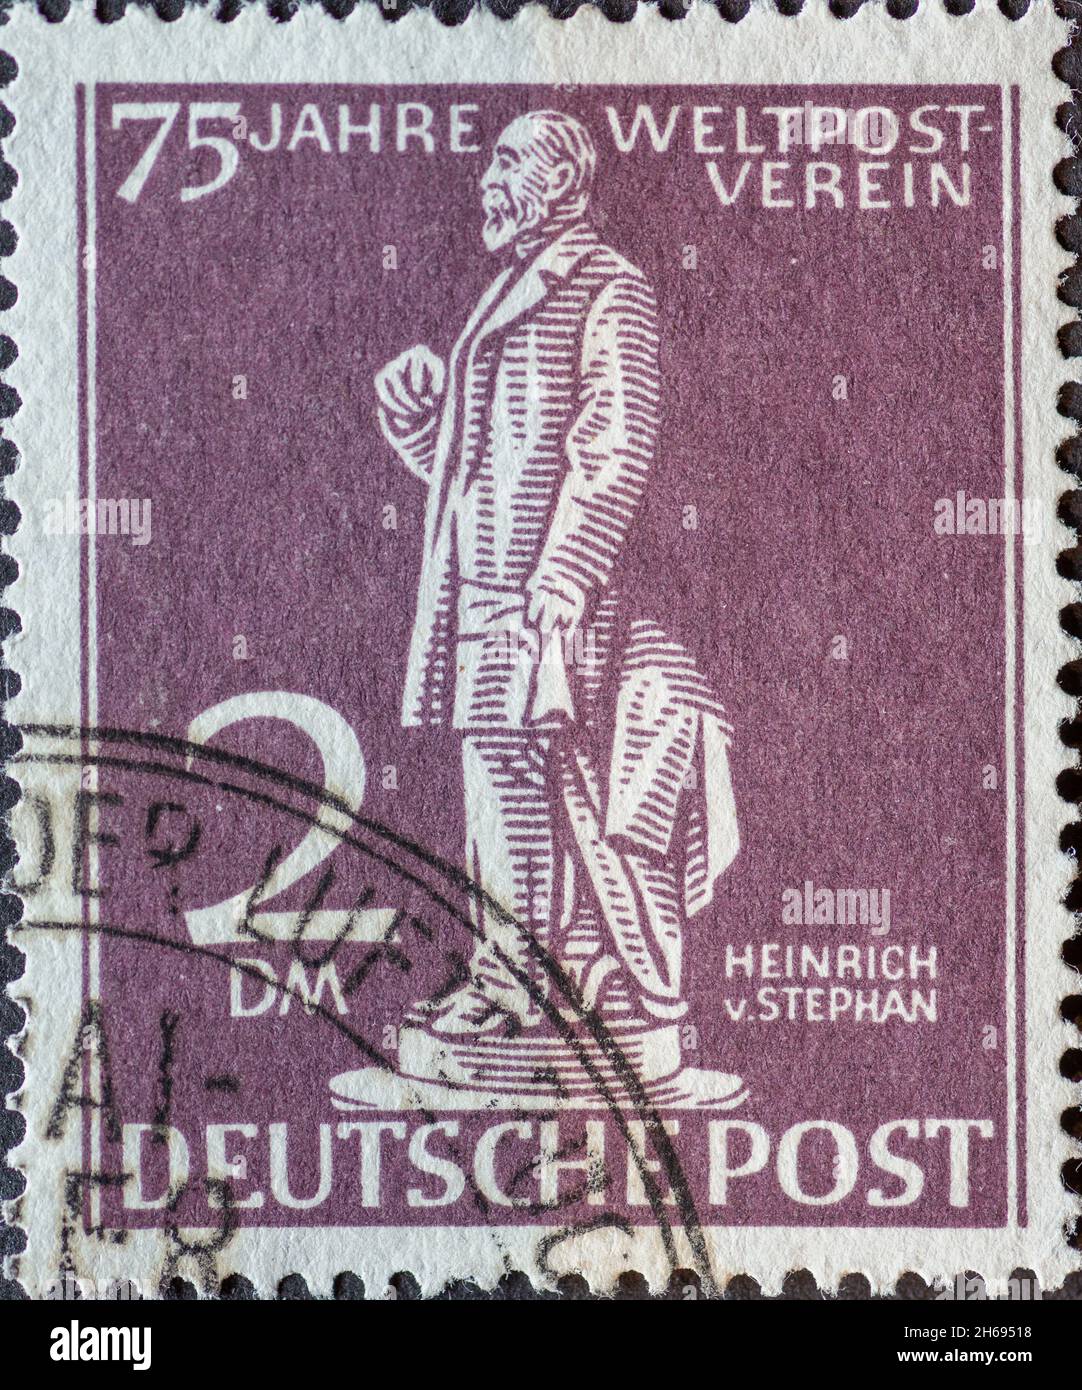 GERMANIA, Berlino - CIRCA 1949: Un francobollo dalla Germania, Berlino di colore viola che mostra il Postmaster Heinrich von Stephan testo: 75 anni di mondo Foto Stock